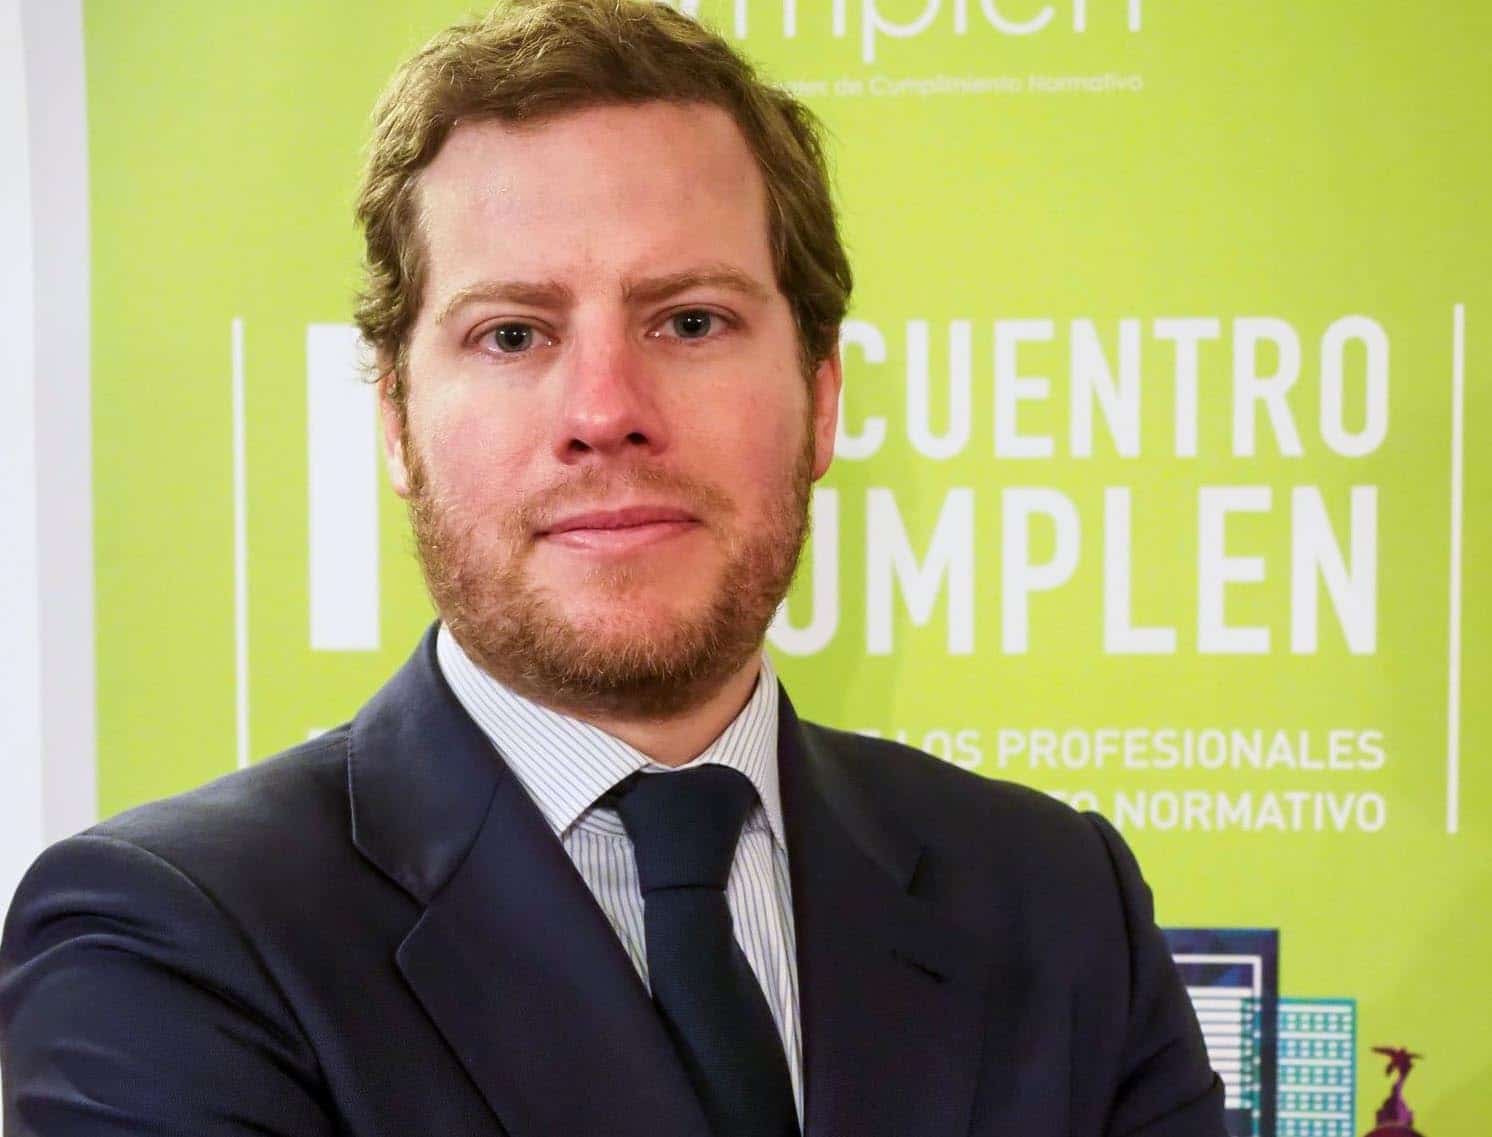 Ignacio Esteban, socio de Garrigues: “Los programas de ‘Compliance’ laboral ayudan a las empresas a gestionar sus riesgos”